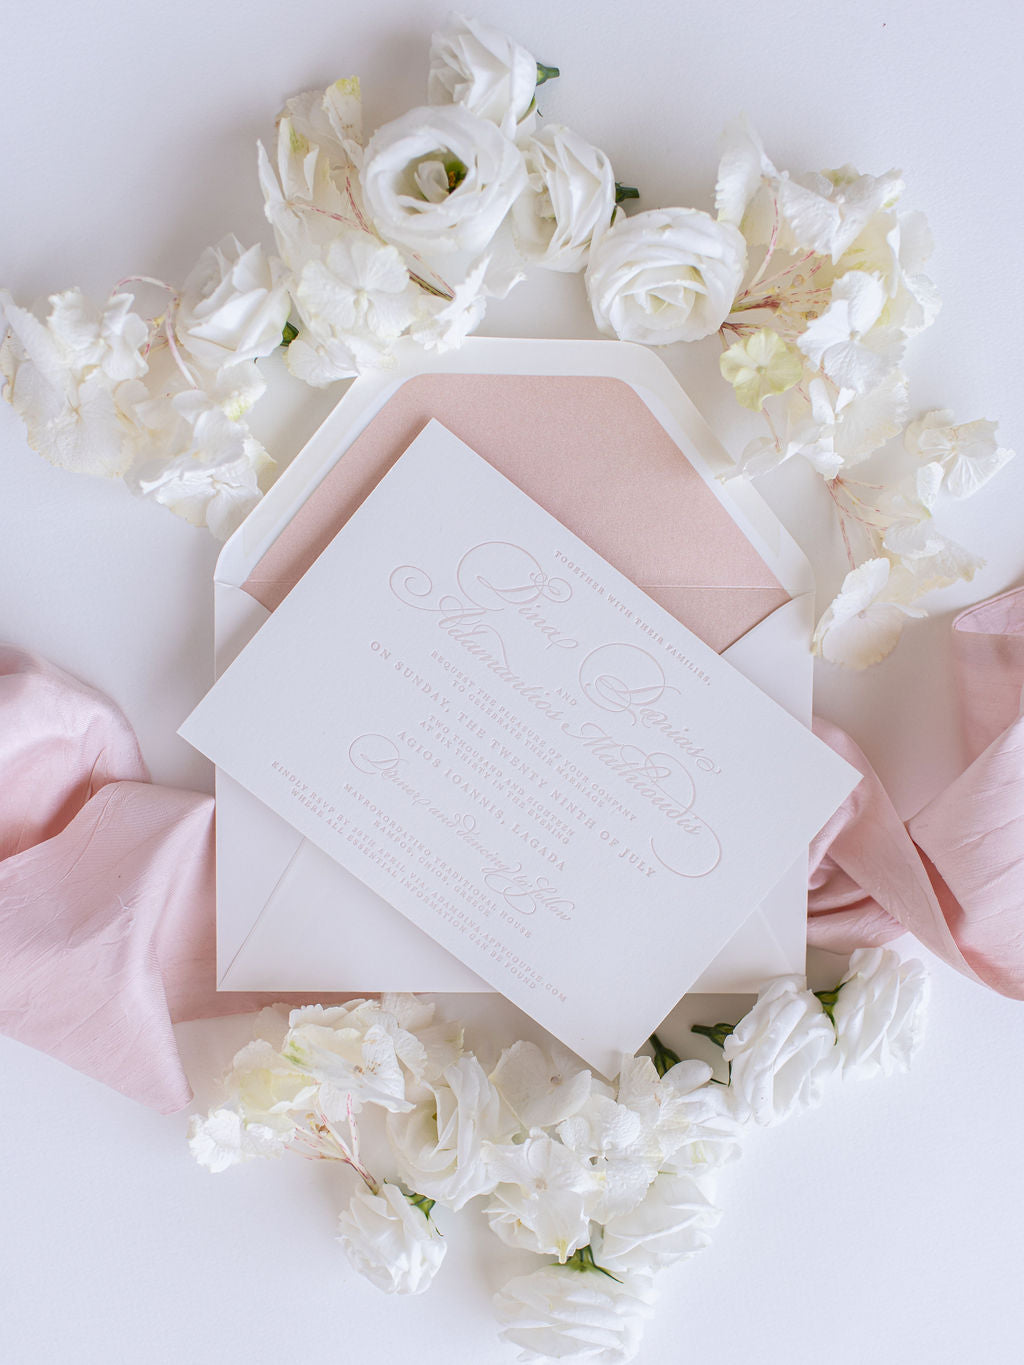 Invitación elegante del día de la boda tipográfica de lujo en tablero 100 % algodón de 710 g/m²